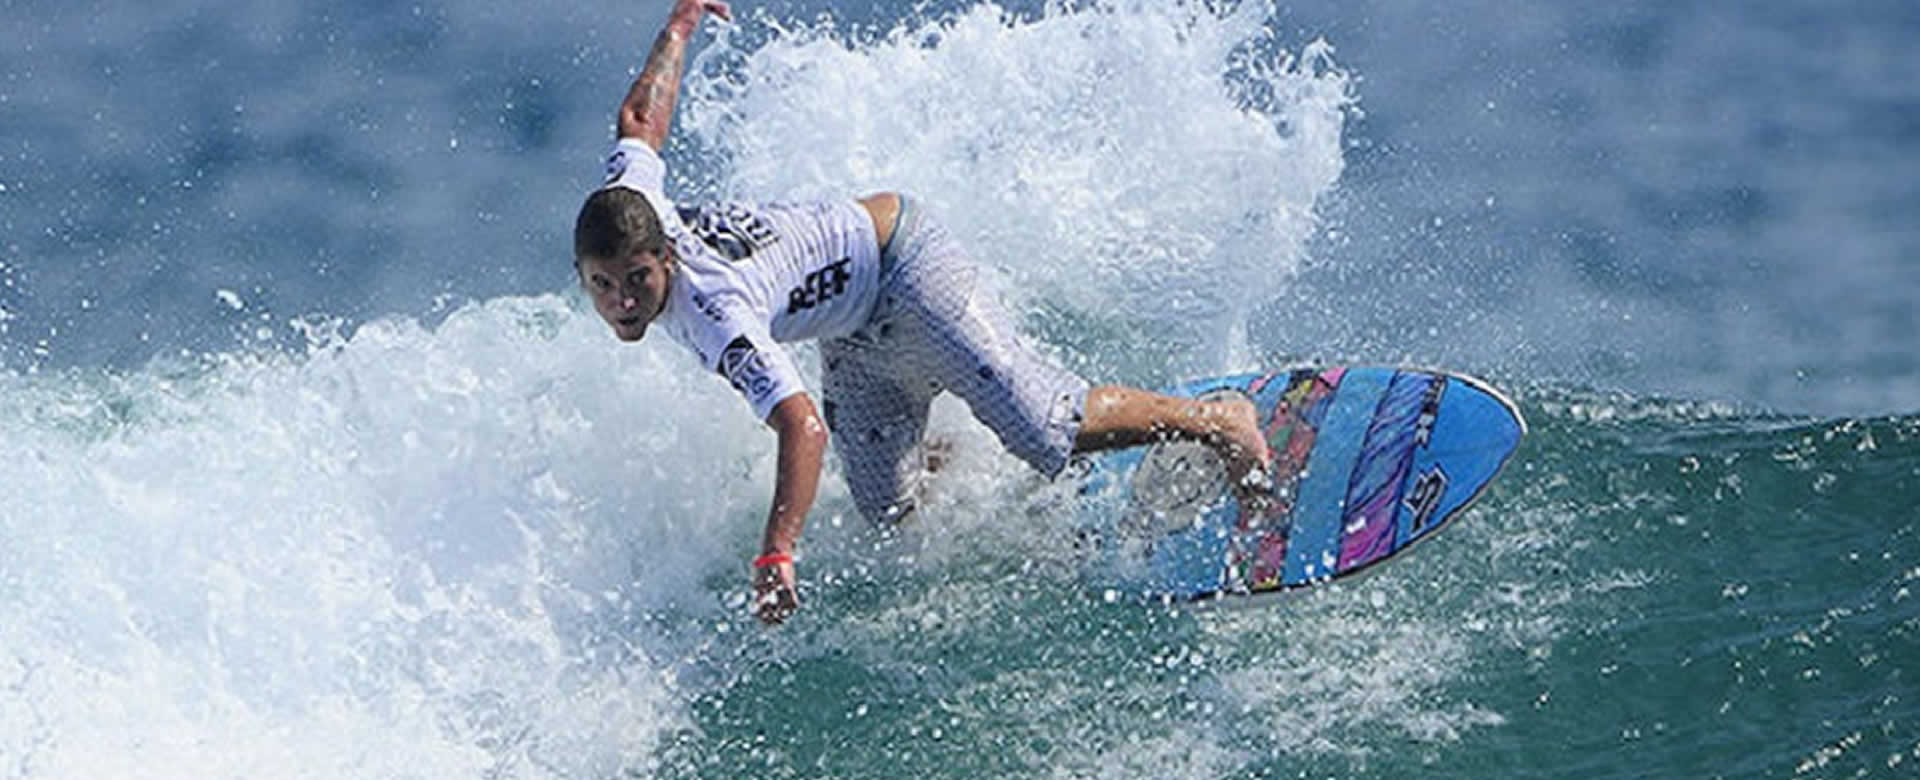 INTUR anuncia Torneo Nacional de Surf para los amantes de las olas